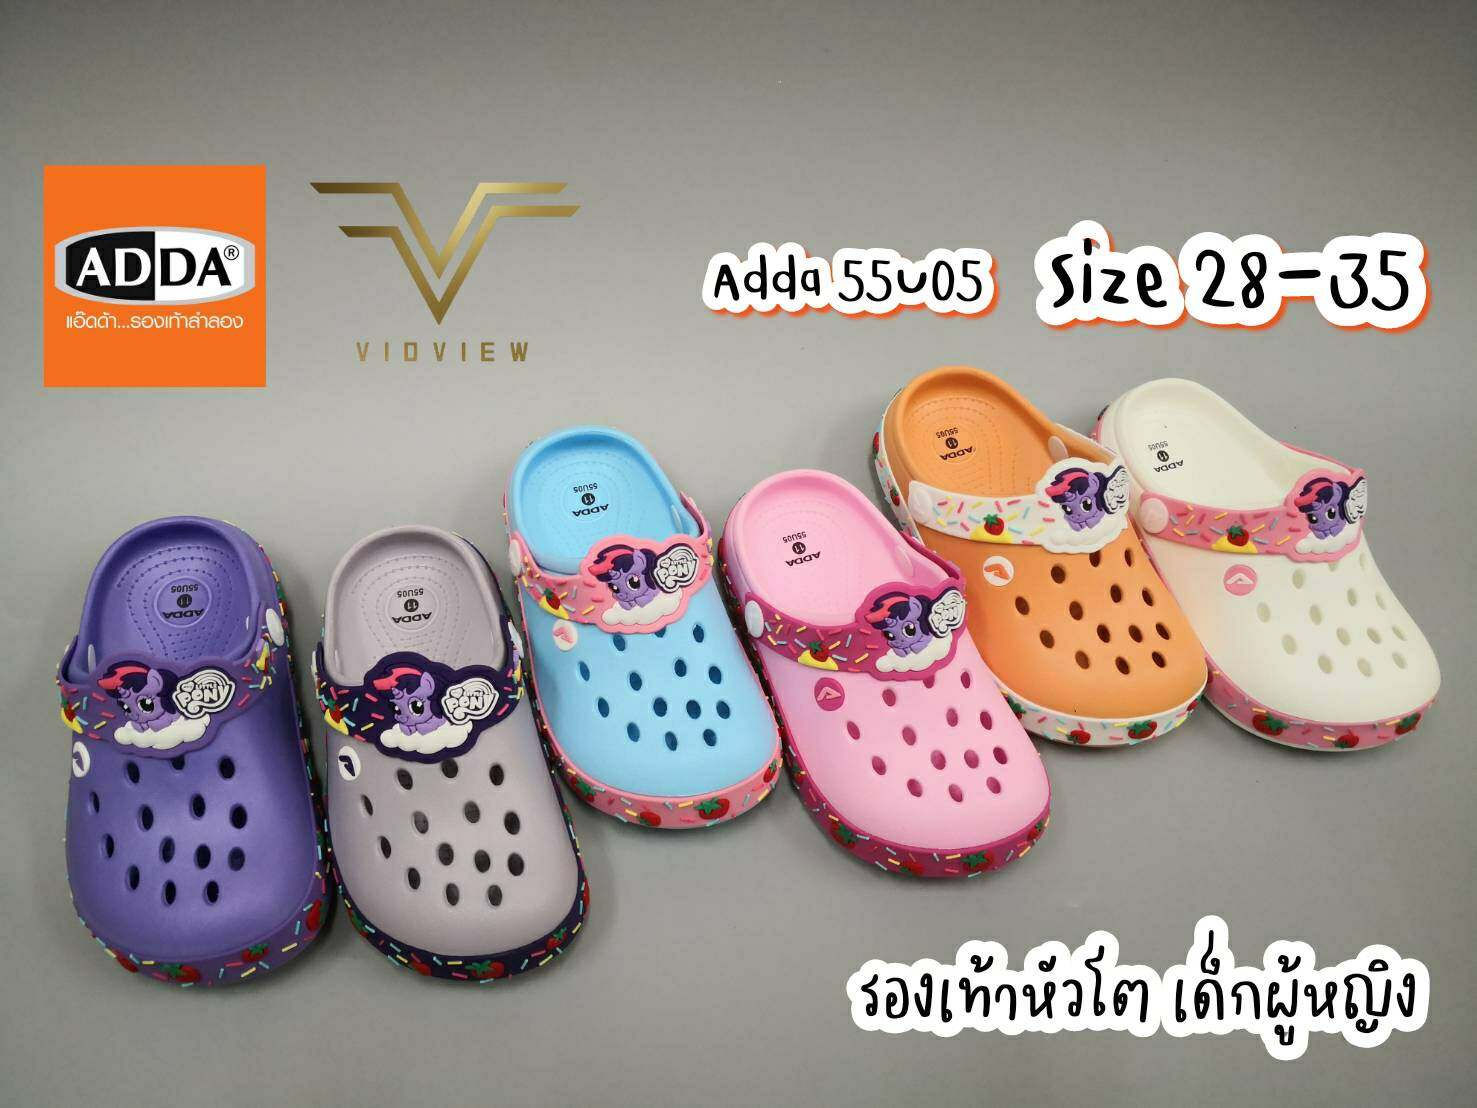 VIDVIEW รองเท้าเด็กผู้หญิง Adda 55U05 สีหวาน น่ารัก ใส่สบาย (ไซส์ 28-35) รองเท้าเด็กโต รองเท้าเด็ก รองเท้าหัวโต